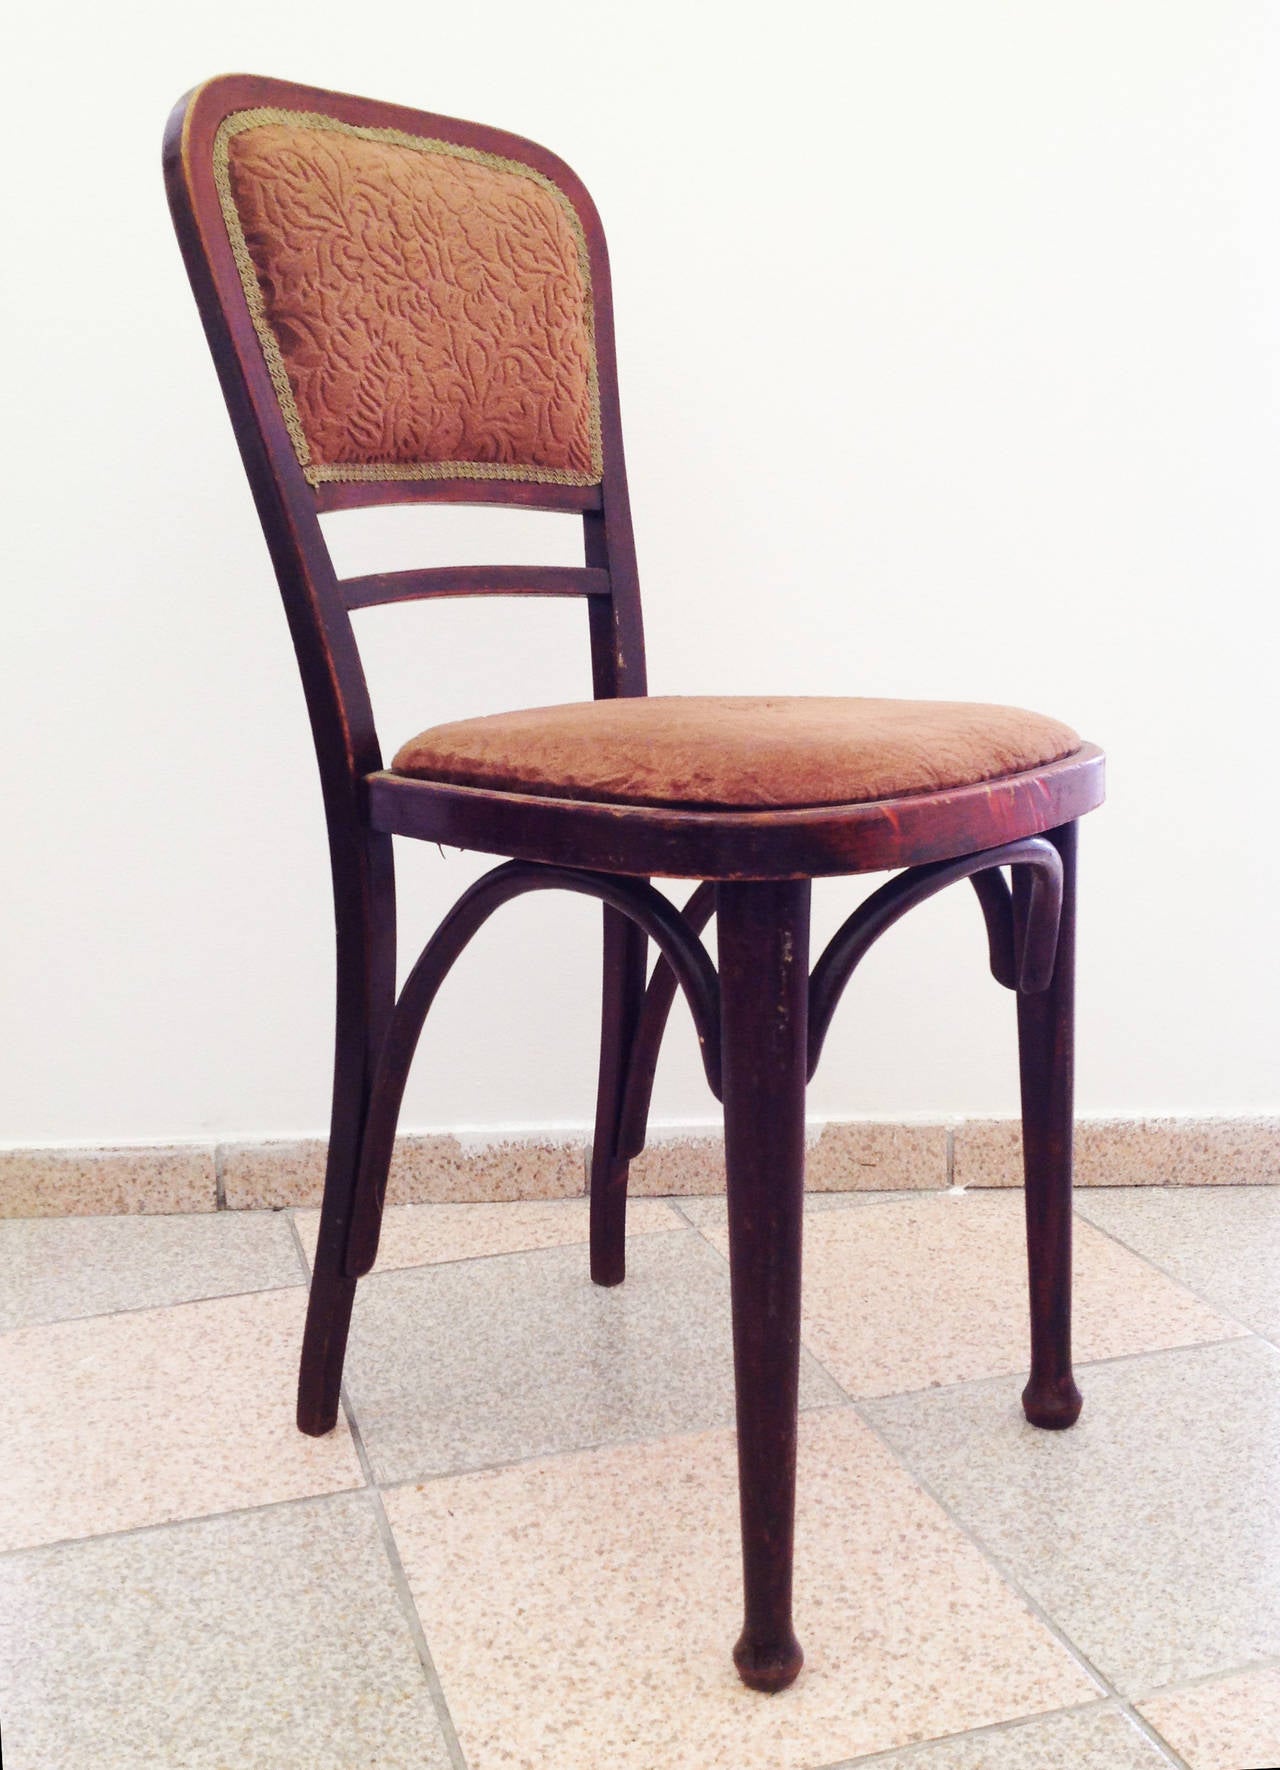 Ein Paar Thonet 492 Stühle, noch unrestauriert, Gustav Siegel zugeschrieben
Die Stühle können auf Kundenwunsch restauriert werden, was bedeutet, dass die Holzfarbe und der Stoff oder das Leder vom potenziellen Käufer gewählt werden